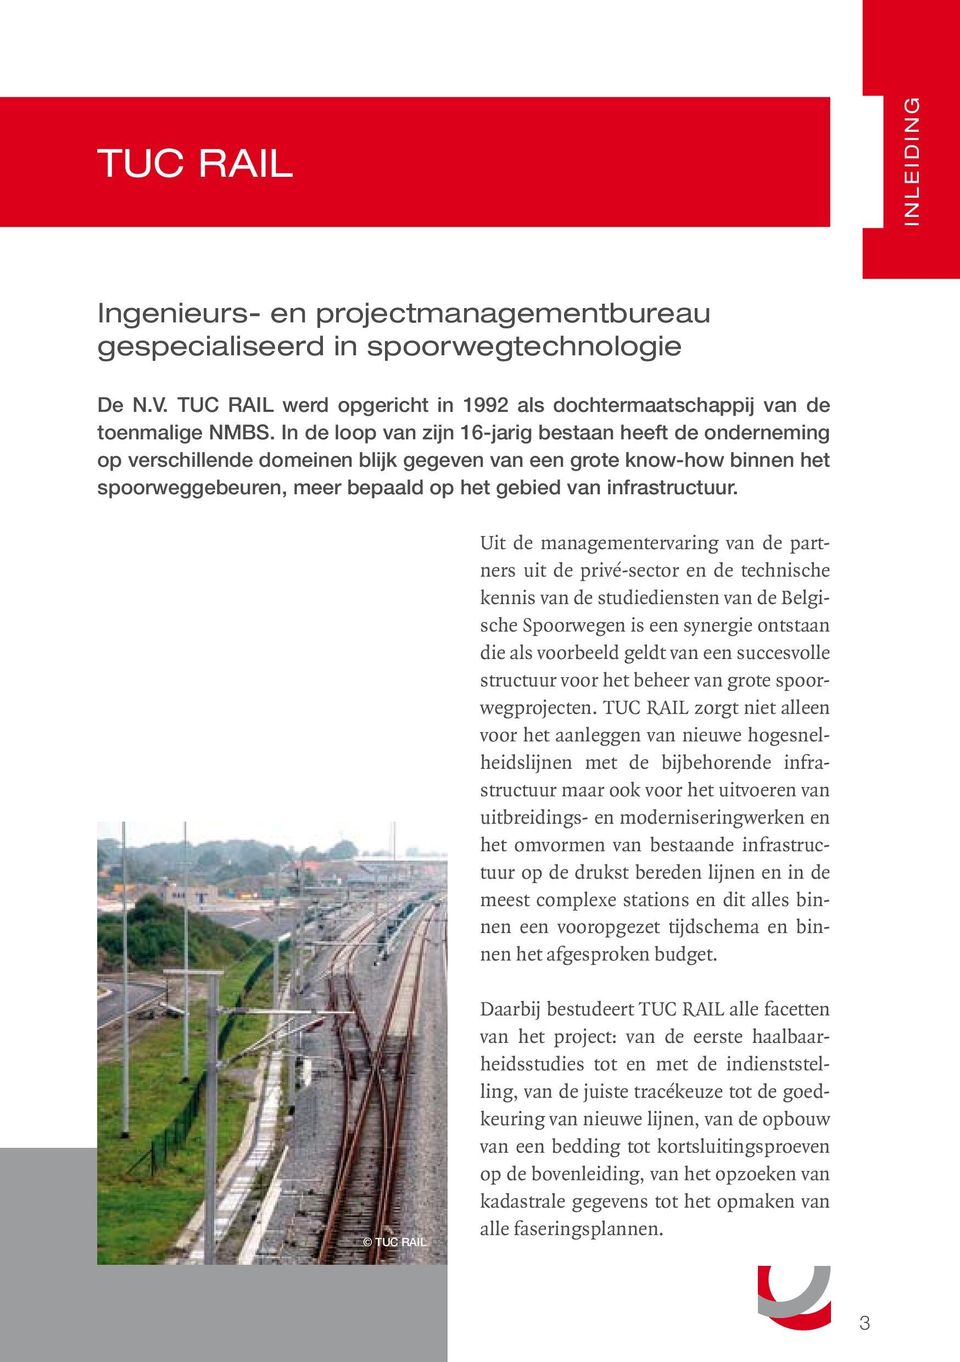 Uit de managementervaring van de partners uit de privé-sector en de technische kennis van de studiediensten van de Belgische Spoorwegen is een synergie ontstaan die als voorbeeld geldt van een